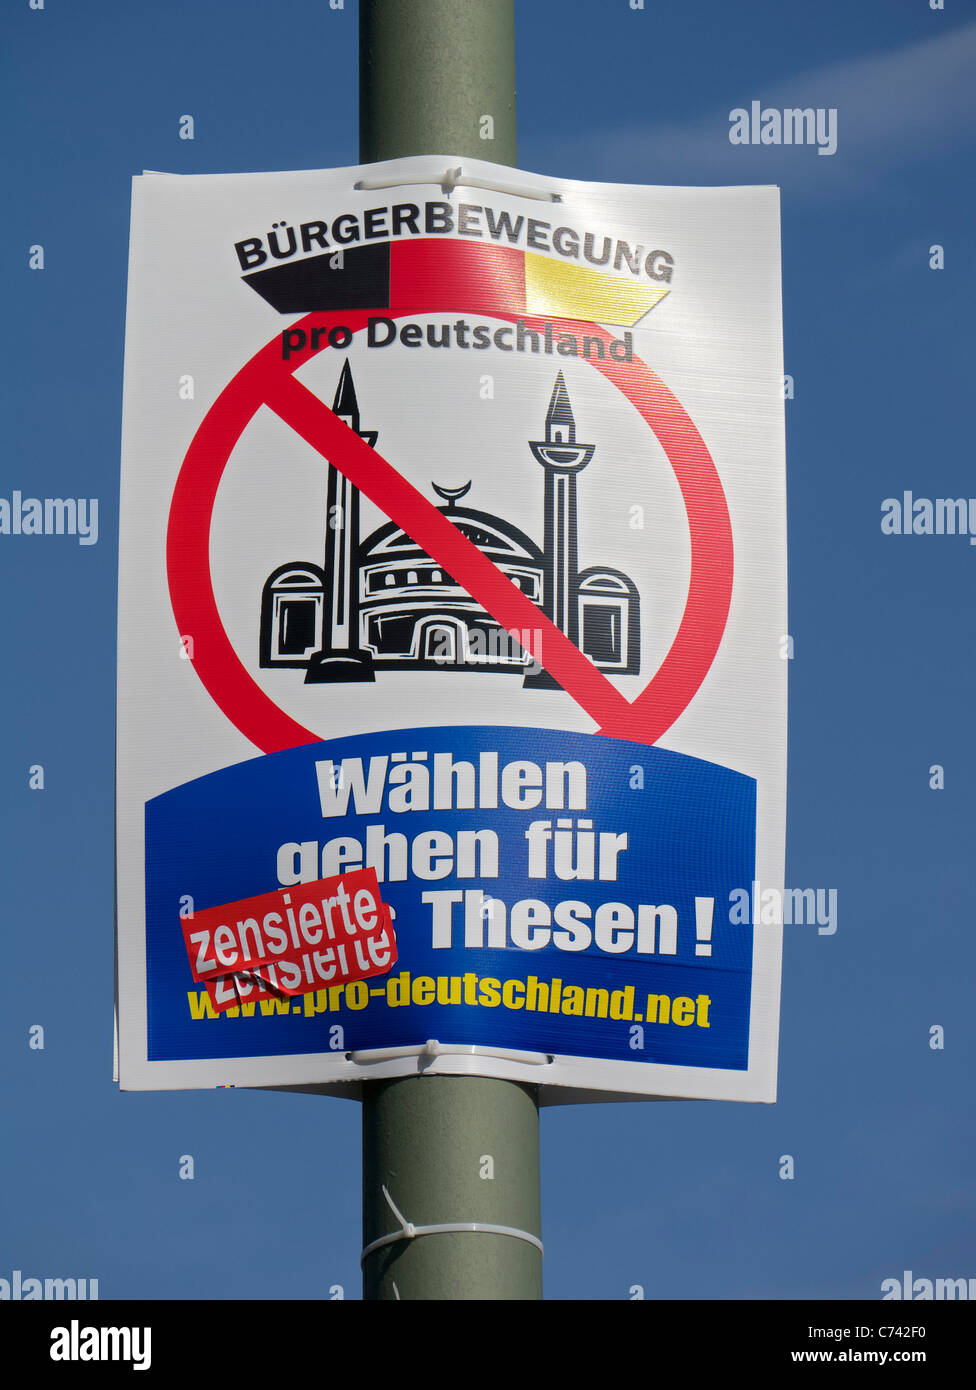 Politique anti-islamiques affiche électorale par pro Allemagne mouvement citoyen parti à Berlin Allemagne avant les élections le 18 sept. Banque D'Images